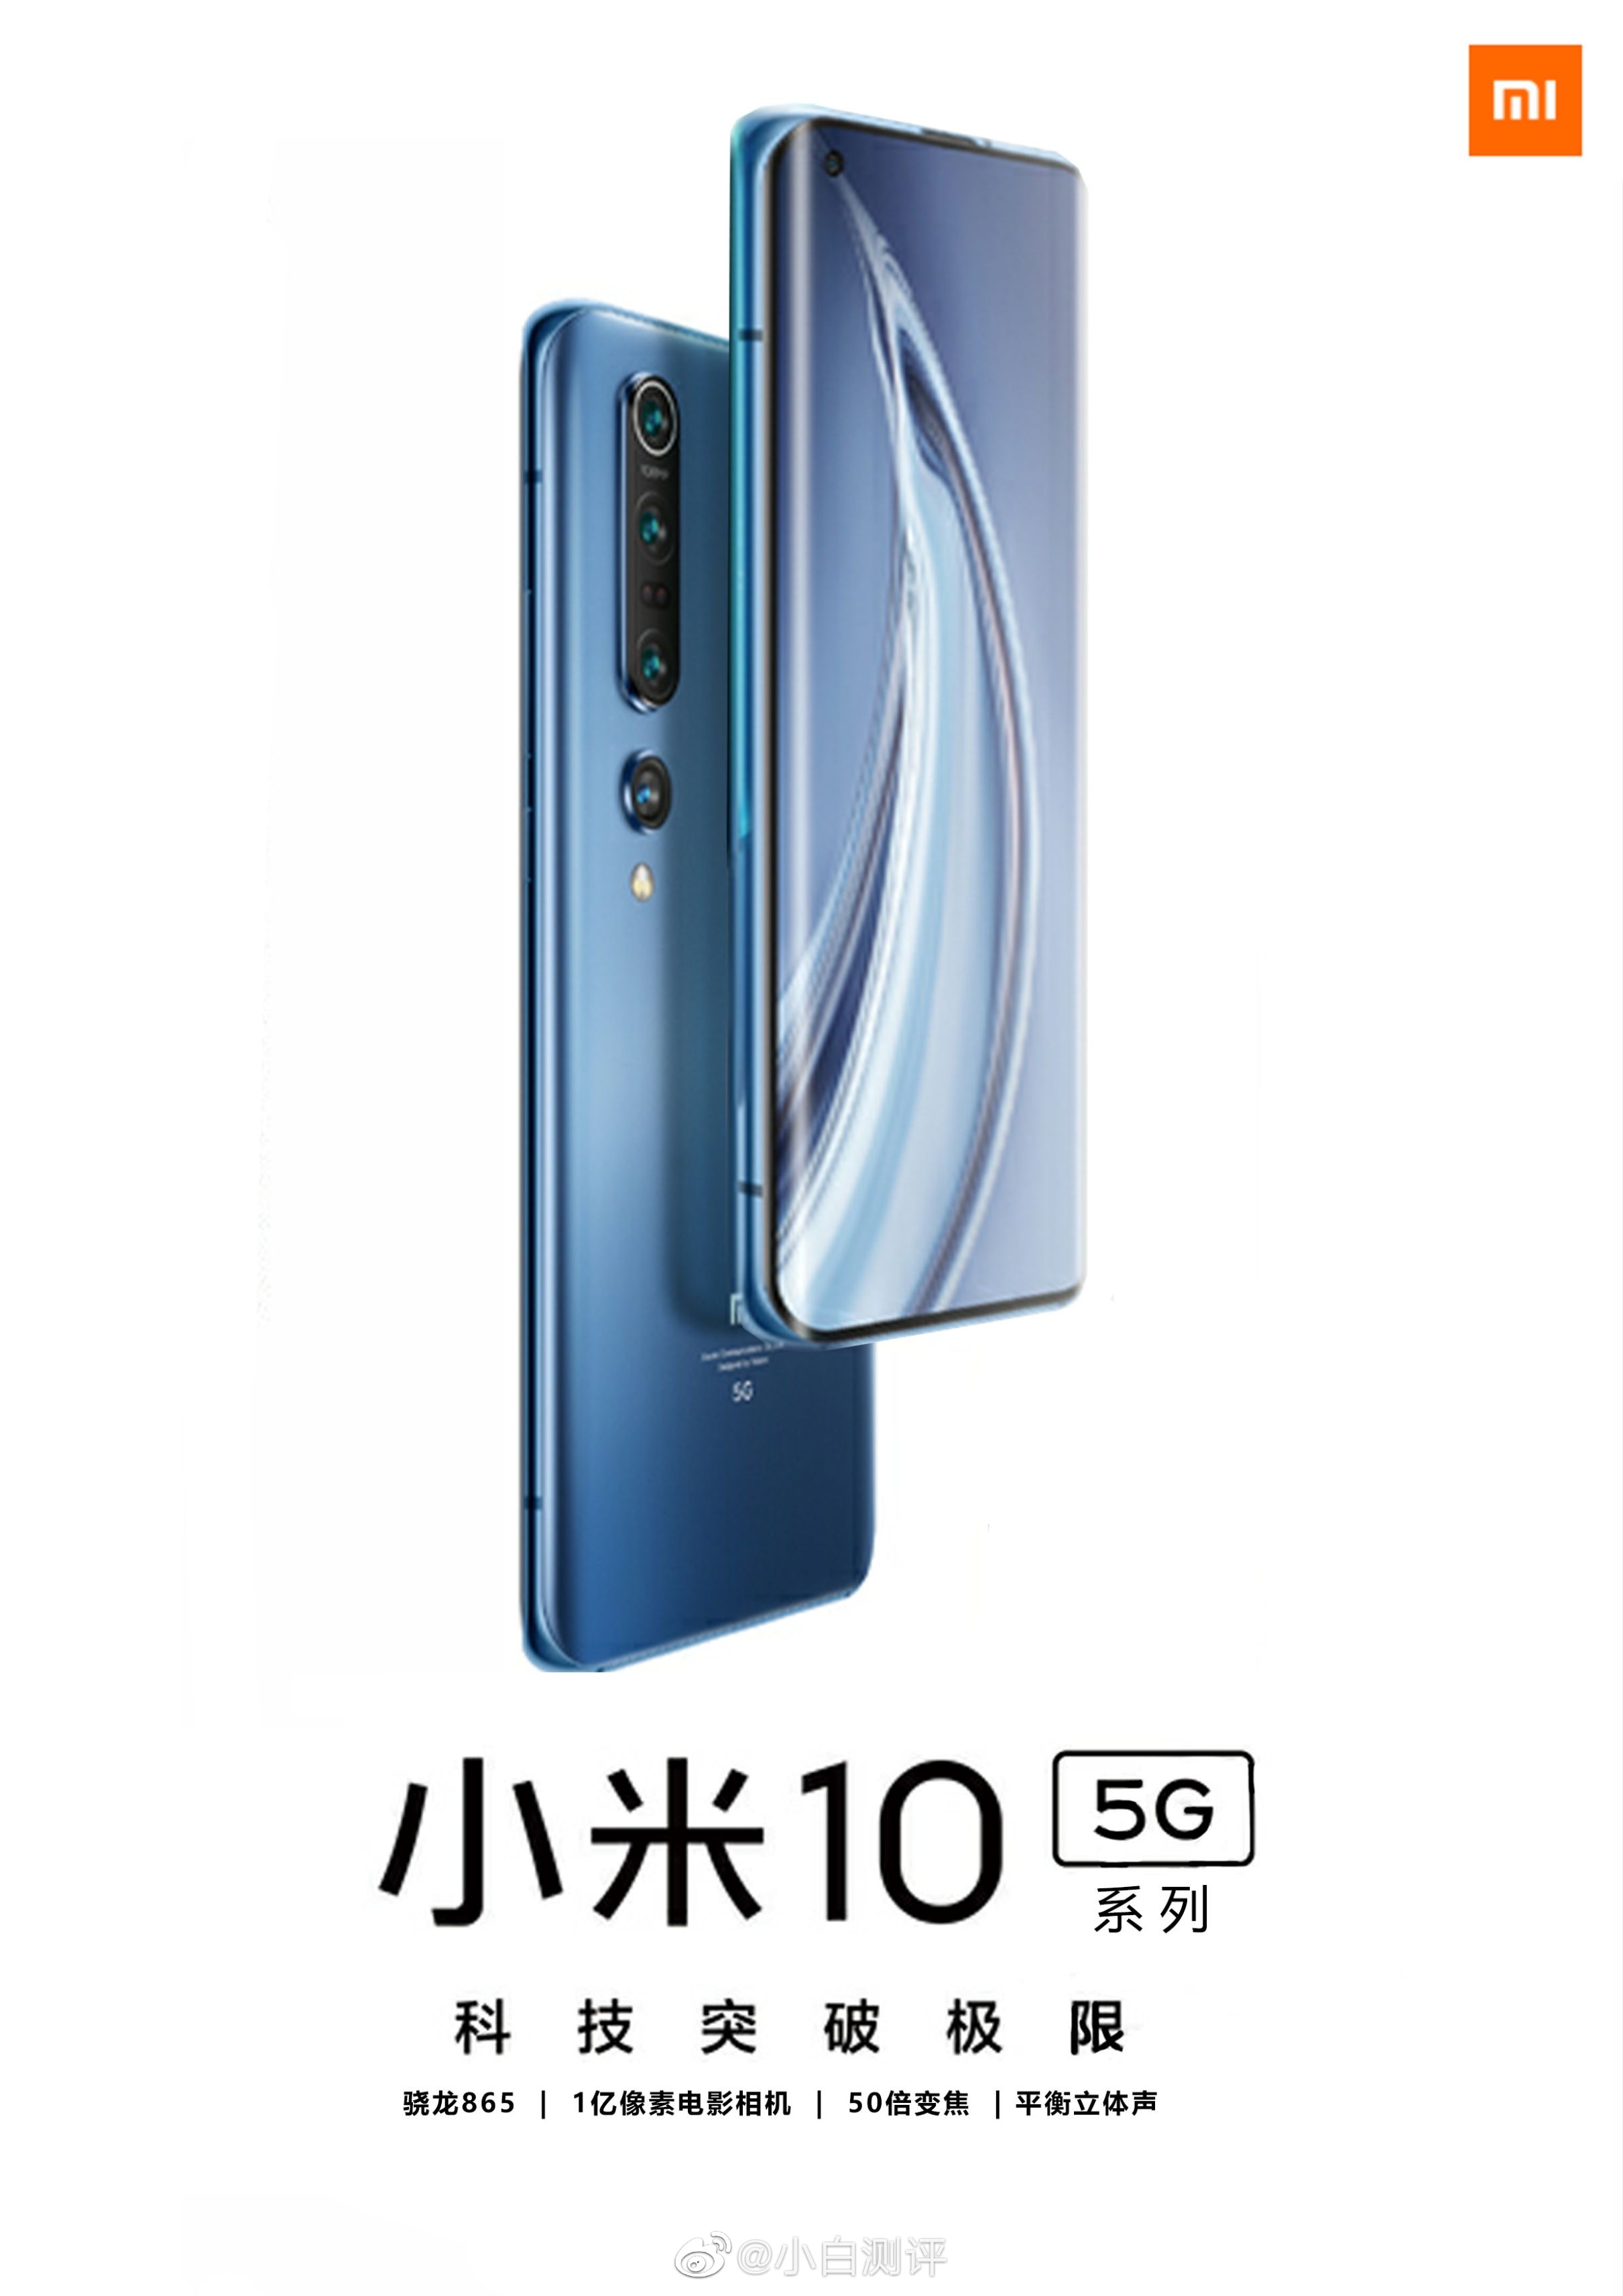 kiedy premiera Xiaomi Mi 10 Pro 5G cena plotki przecieki rendery wycieki dane techniczne specyfikacja